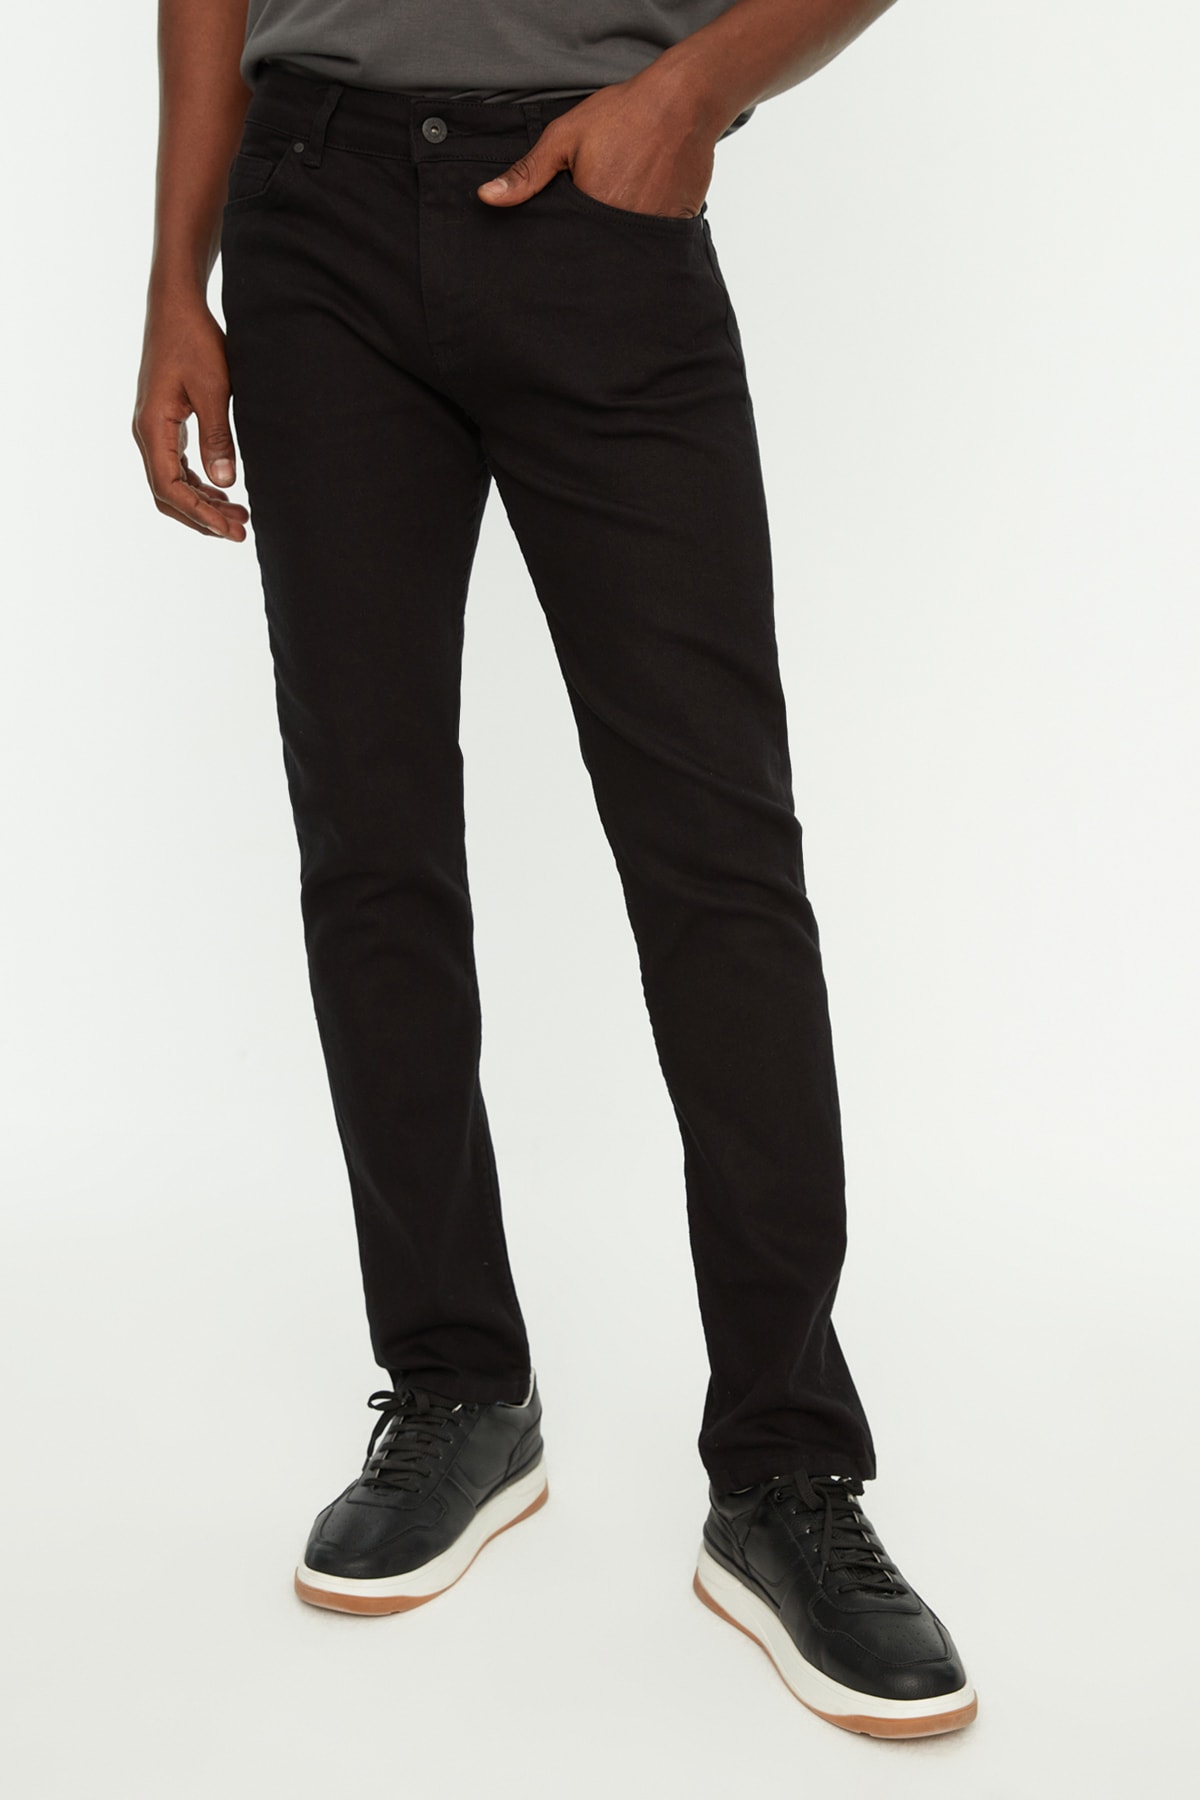 Джинсы Trendyol скинни из нелиняющего материала, черный джинсы скинни fly размер 44 белый черный